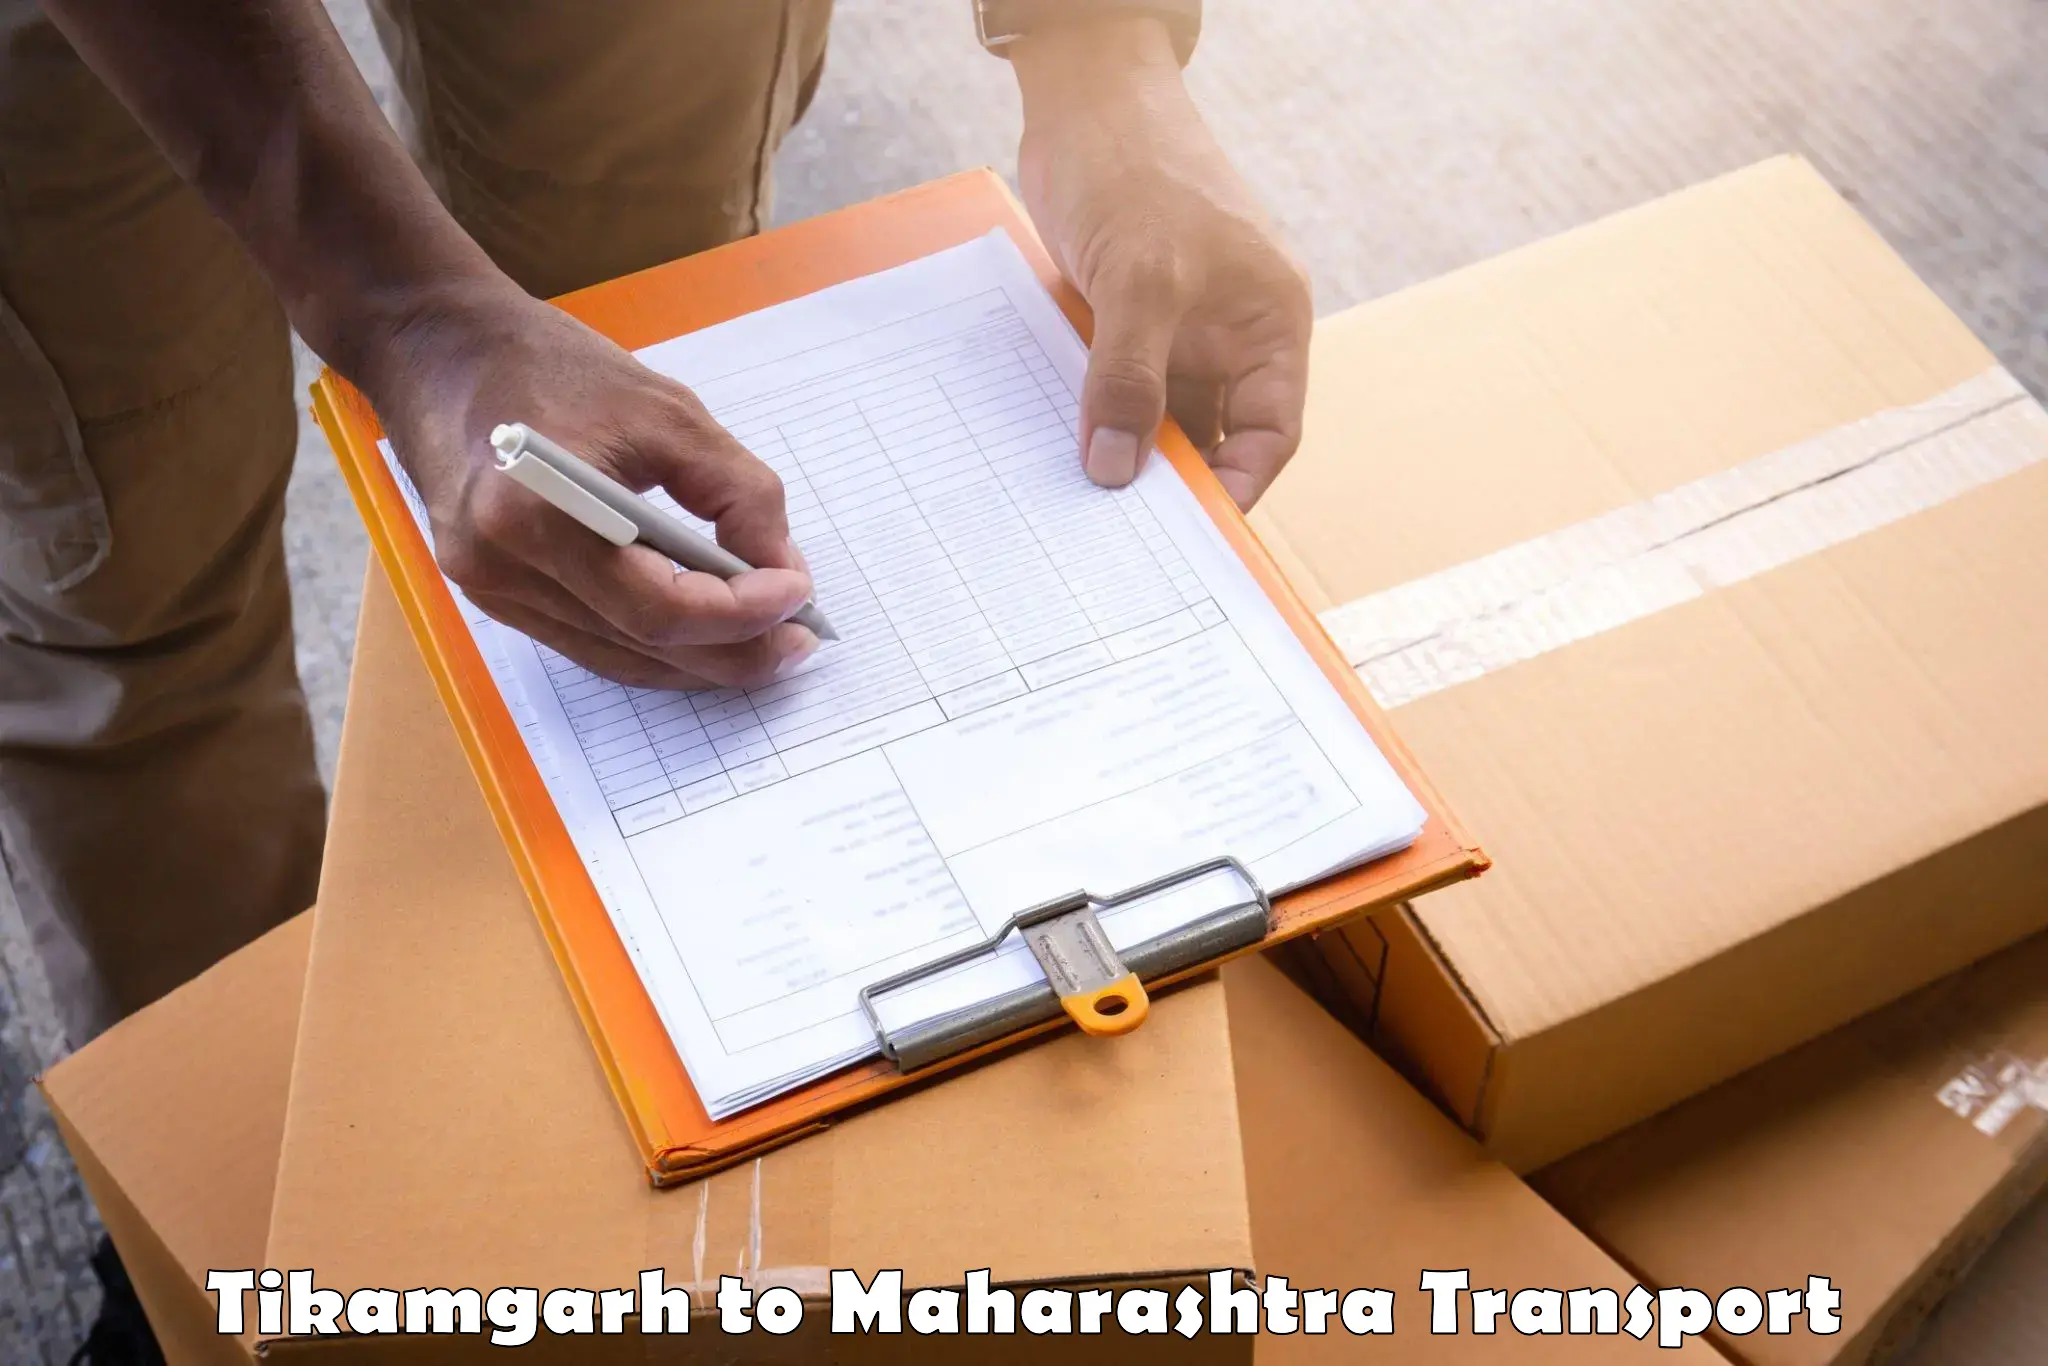 Daily transport service Tikamgarh to Oras